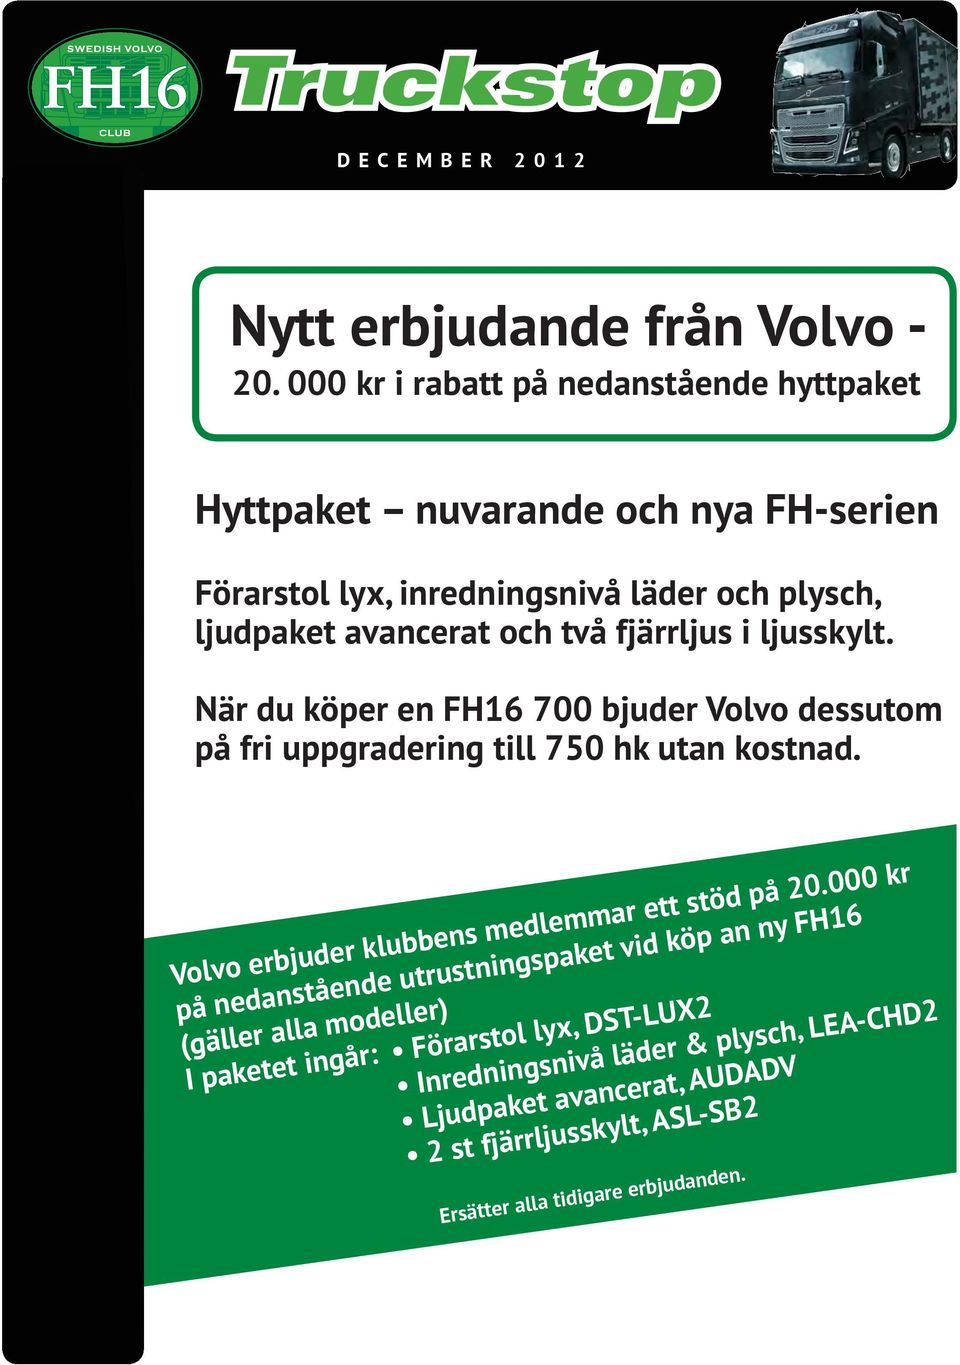 ljusskylt. När du köper en FH16 700 bjuder Volvo dessutom på fri uppgradering till 750 hk utan kostnad. Volvo erbjuder klubbens medlemmar ett stöd på 20.